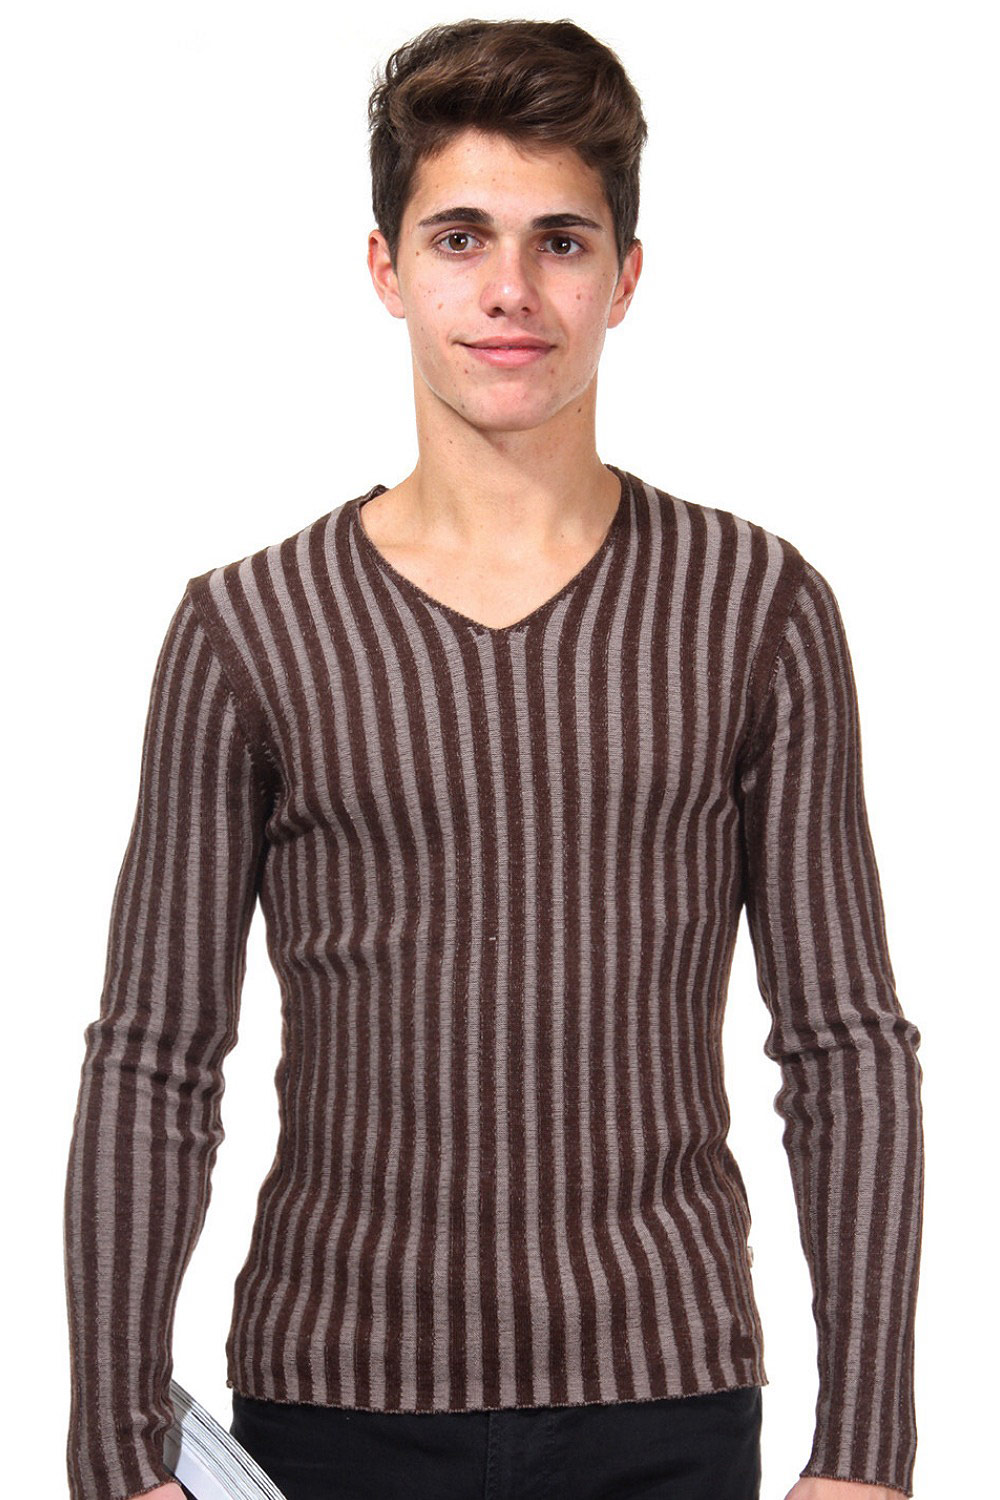 R-NEAL Pullover V-Ausschnitt slim fit auf oboy.de auf oboy.de